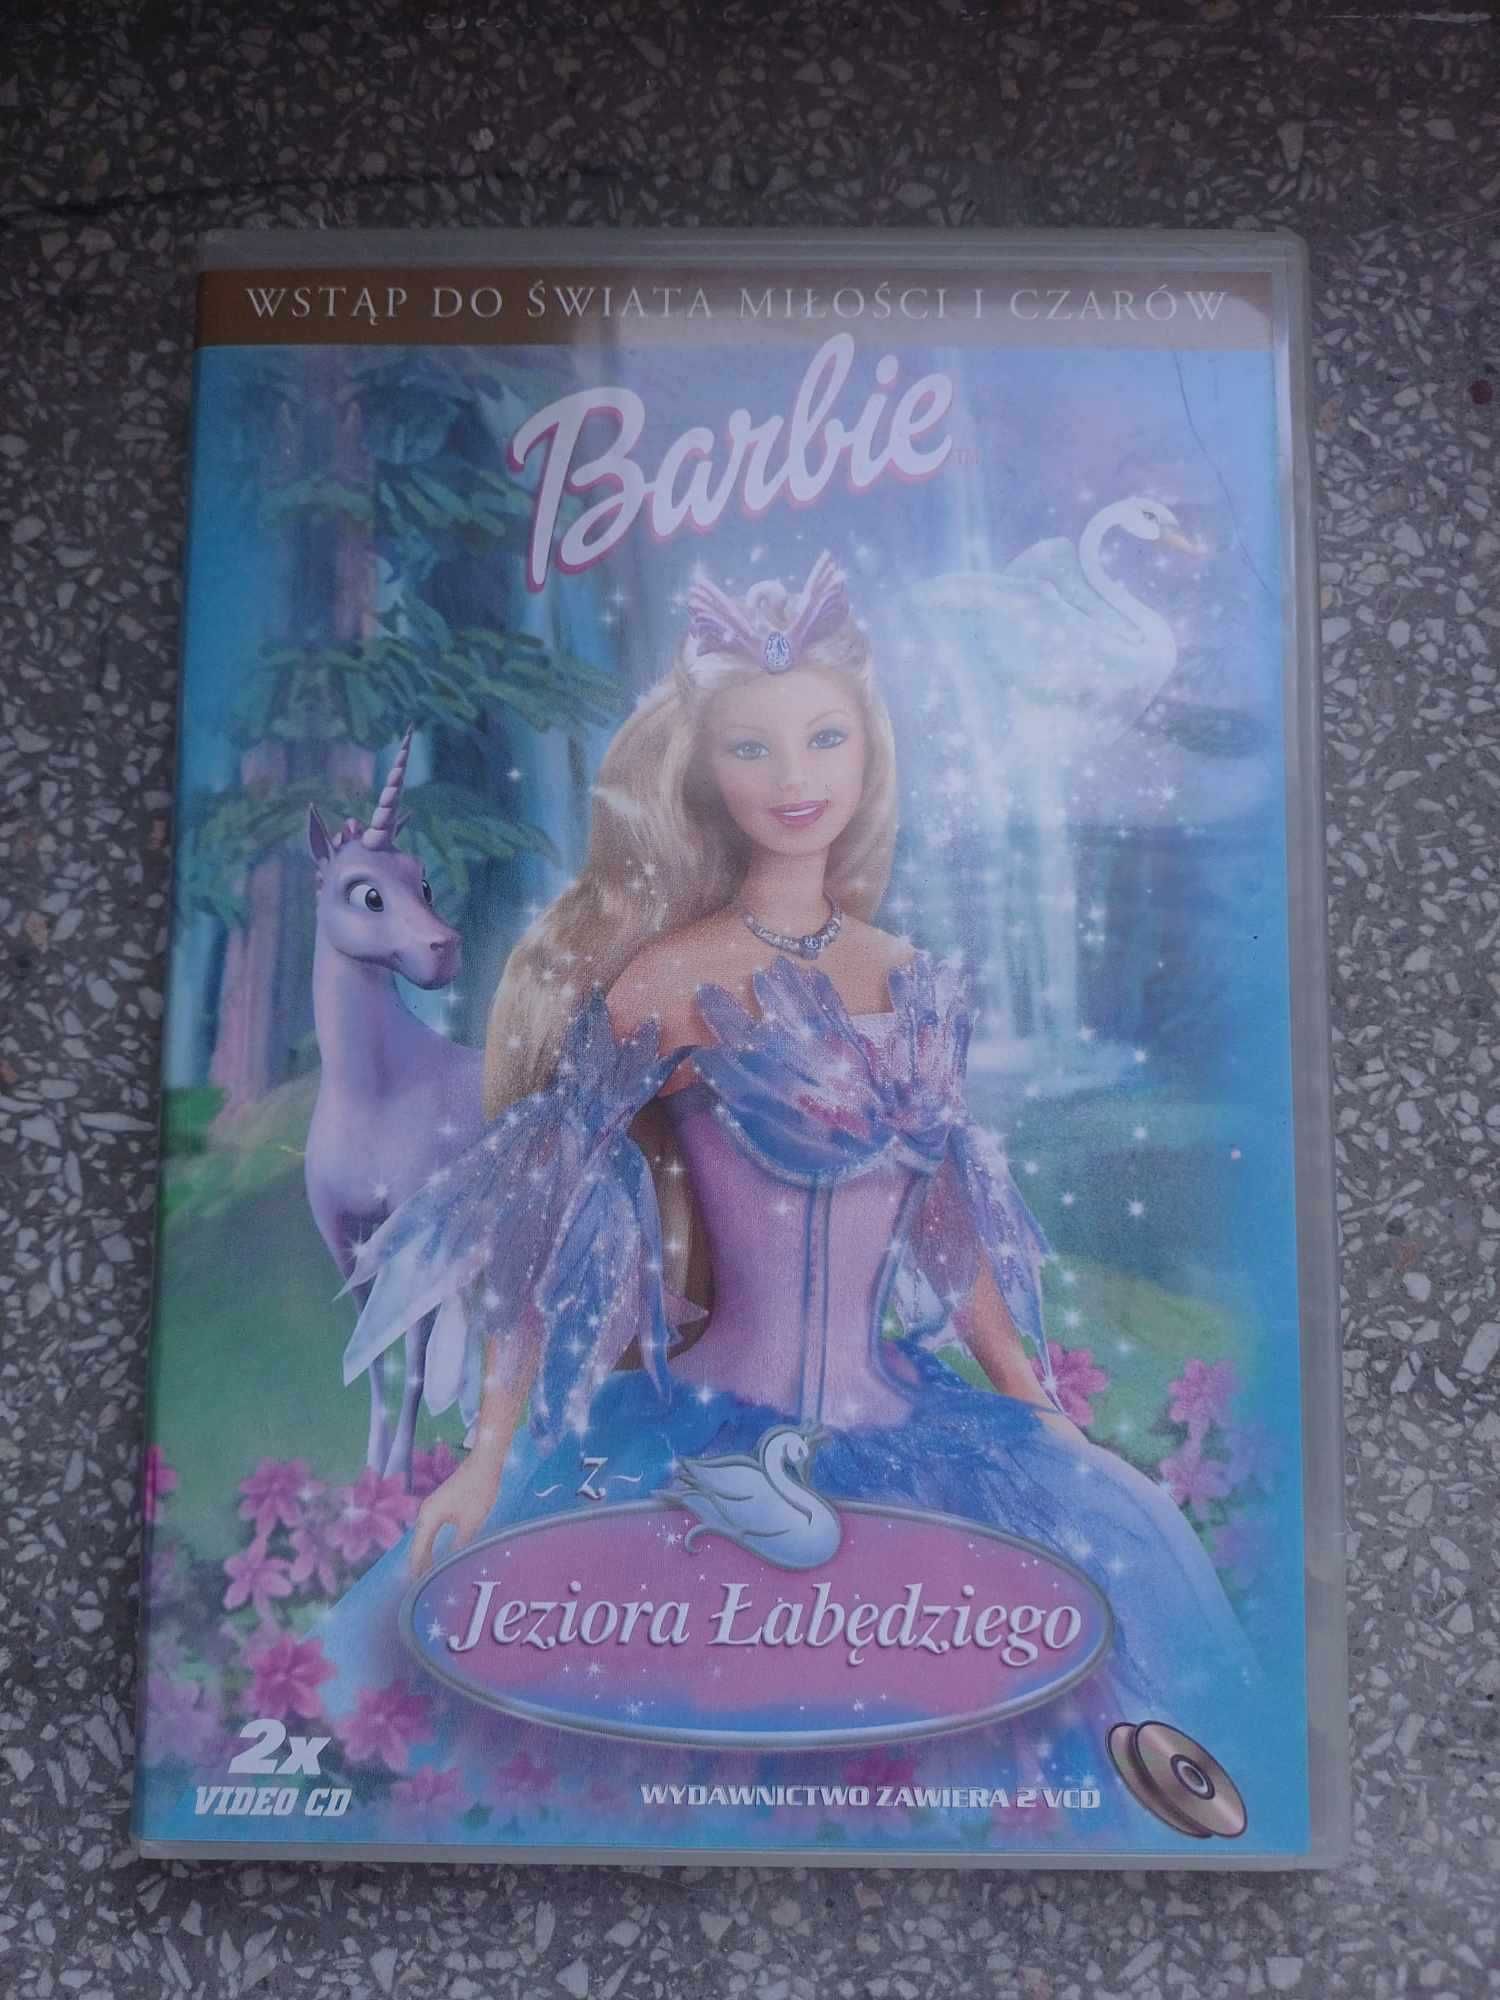 Barbie z Jeziora Łabędziego VCD